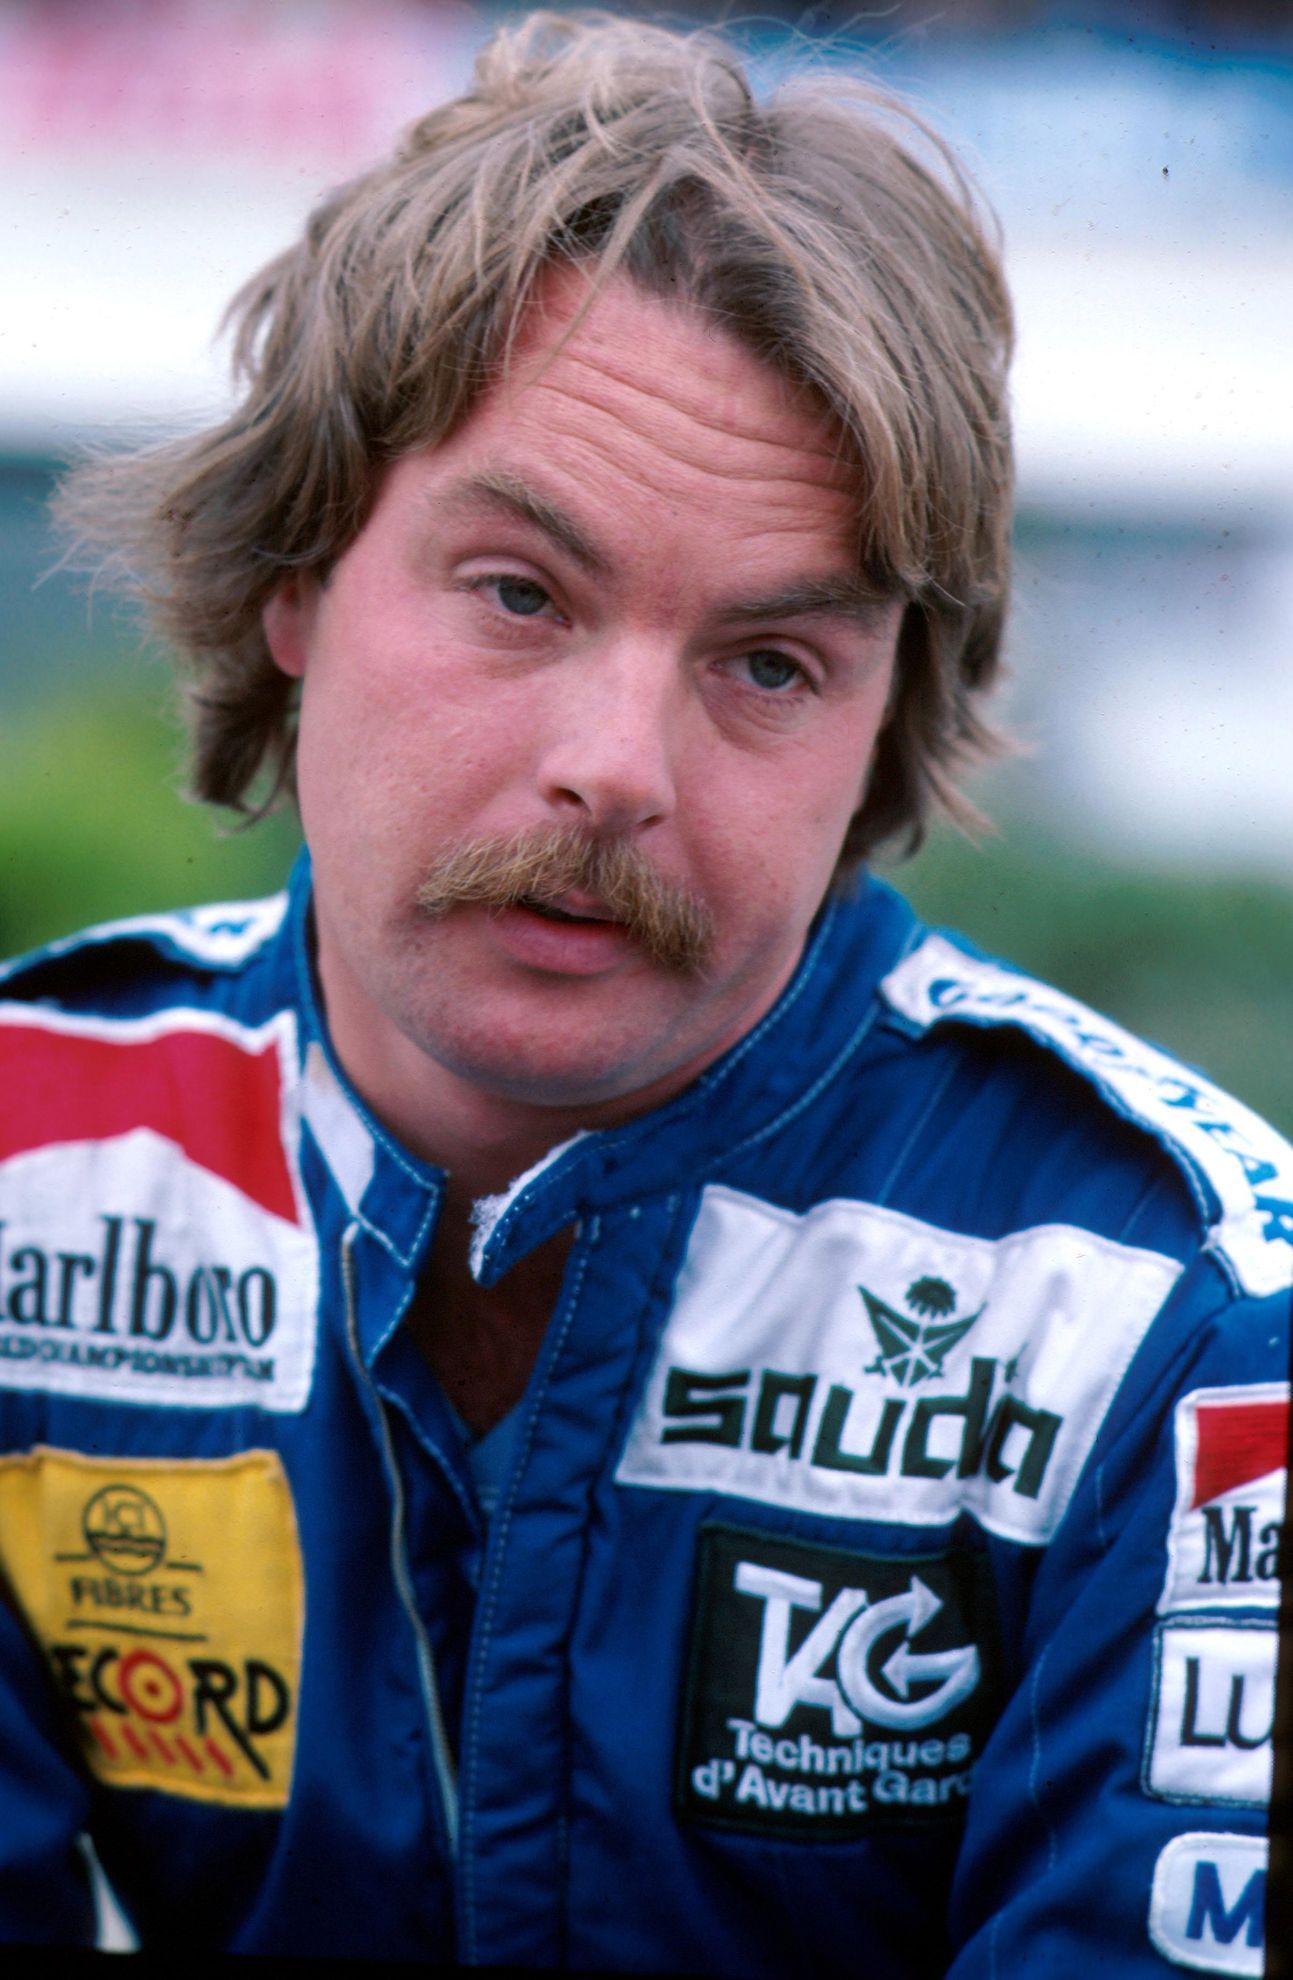 F1 1983: Keke Rosberg, Wiliams